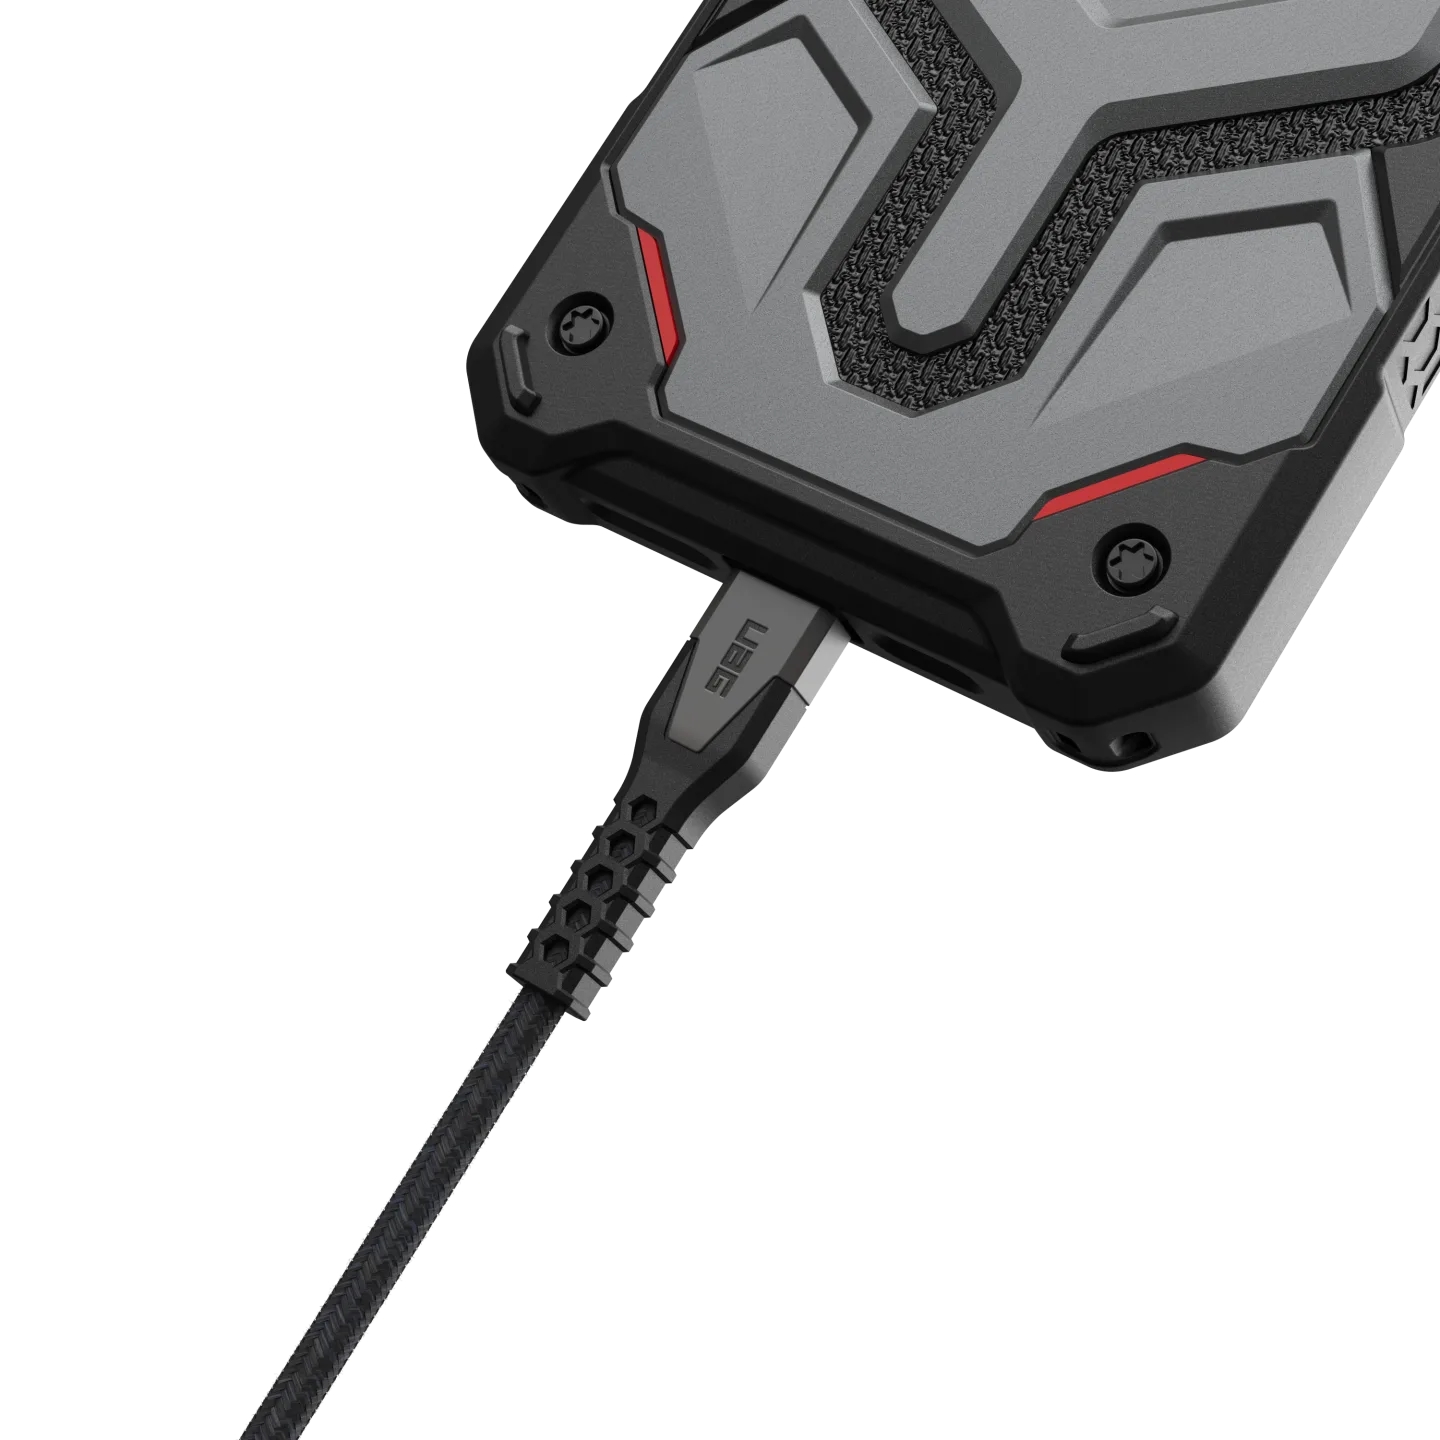 สายชาร์จ UAG รุ่น Rugged Kevlar USB C-to-USB C Cable ความยาว 1.5 เมตร - สี Black/Gray